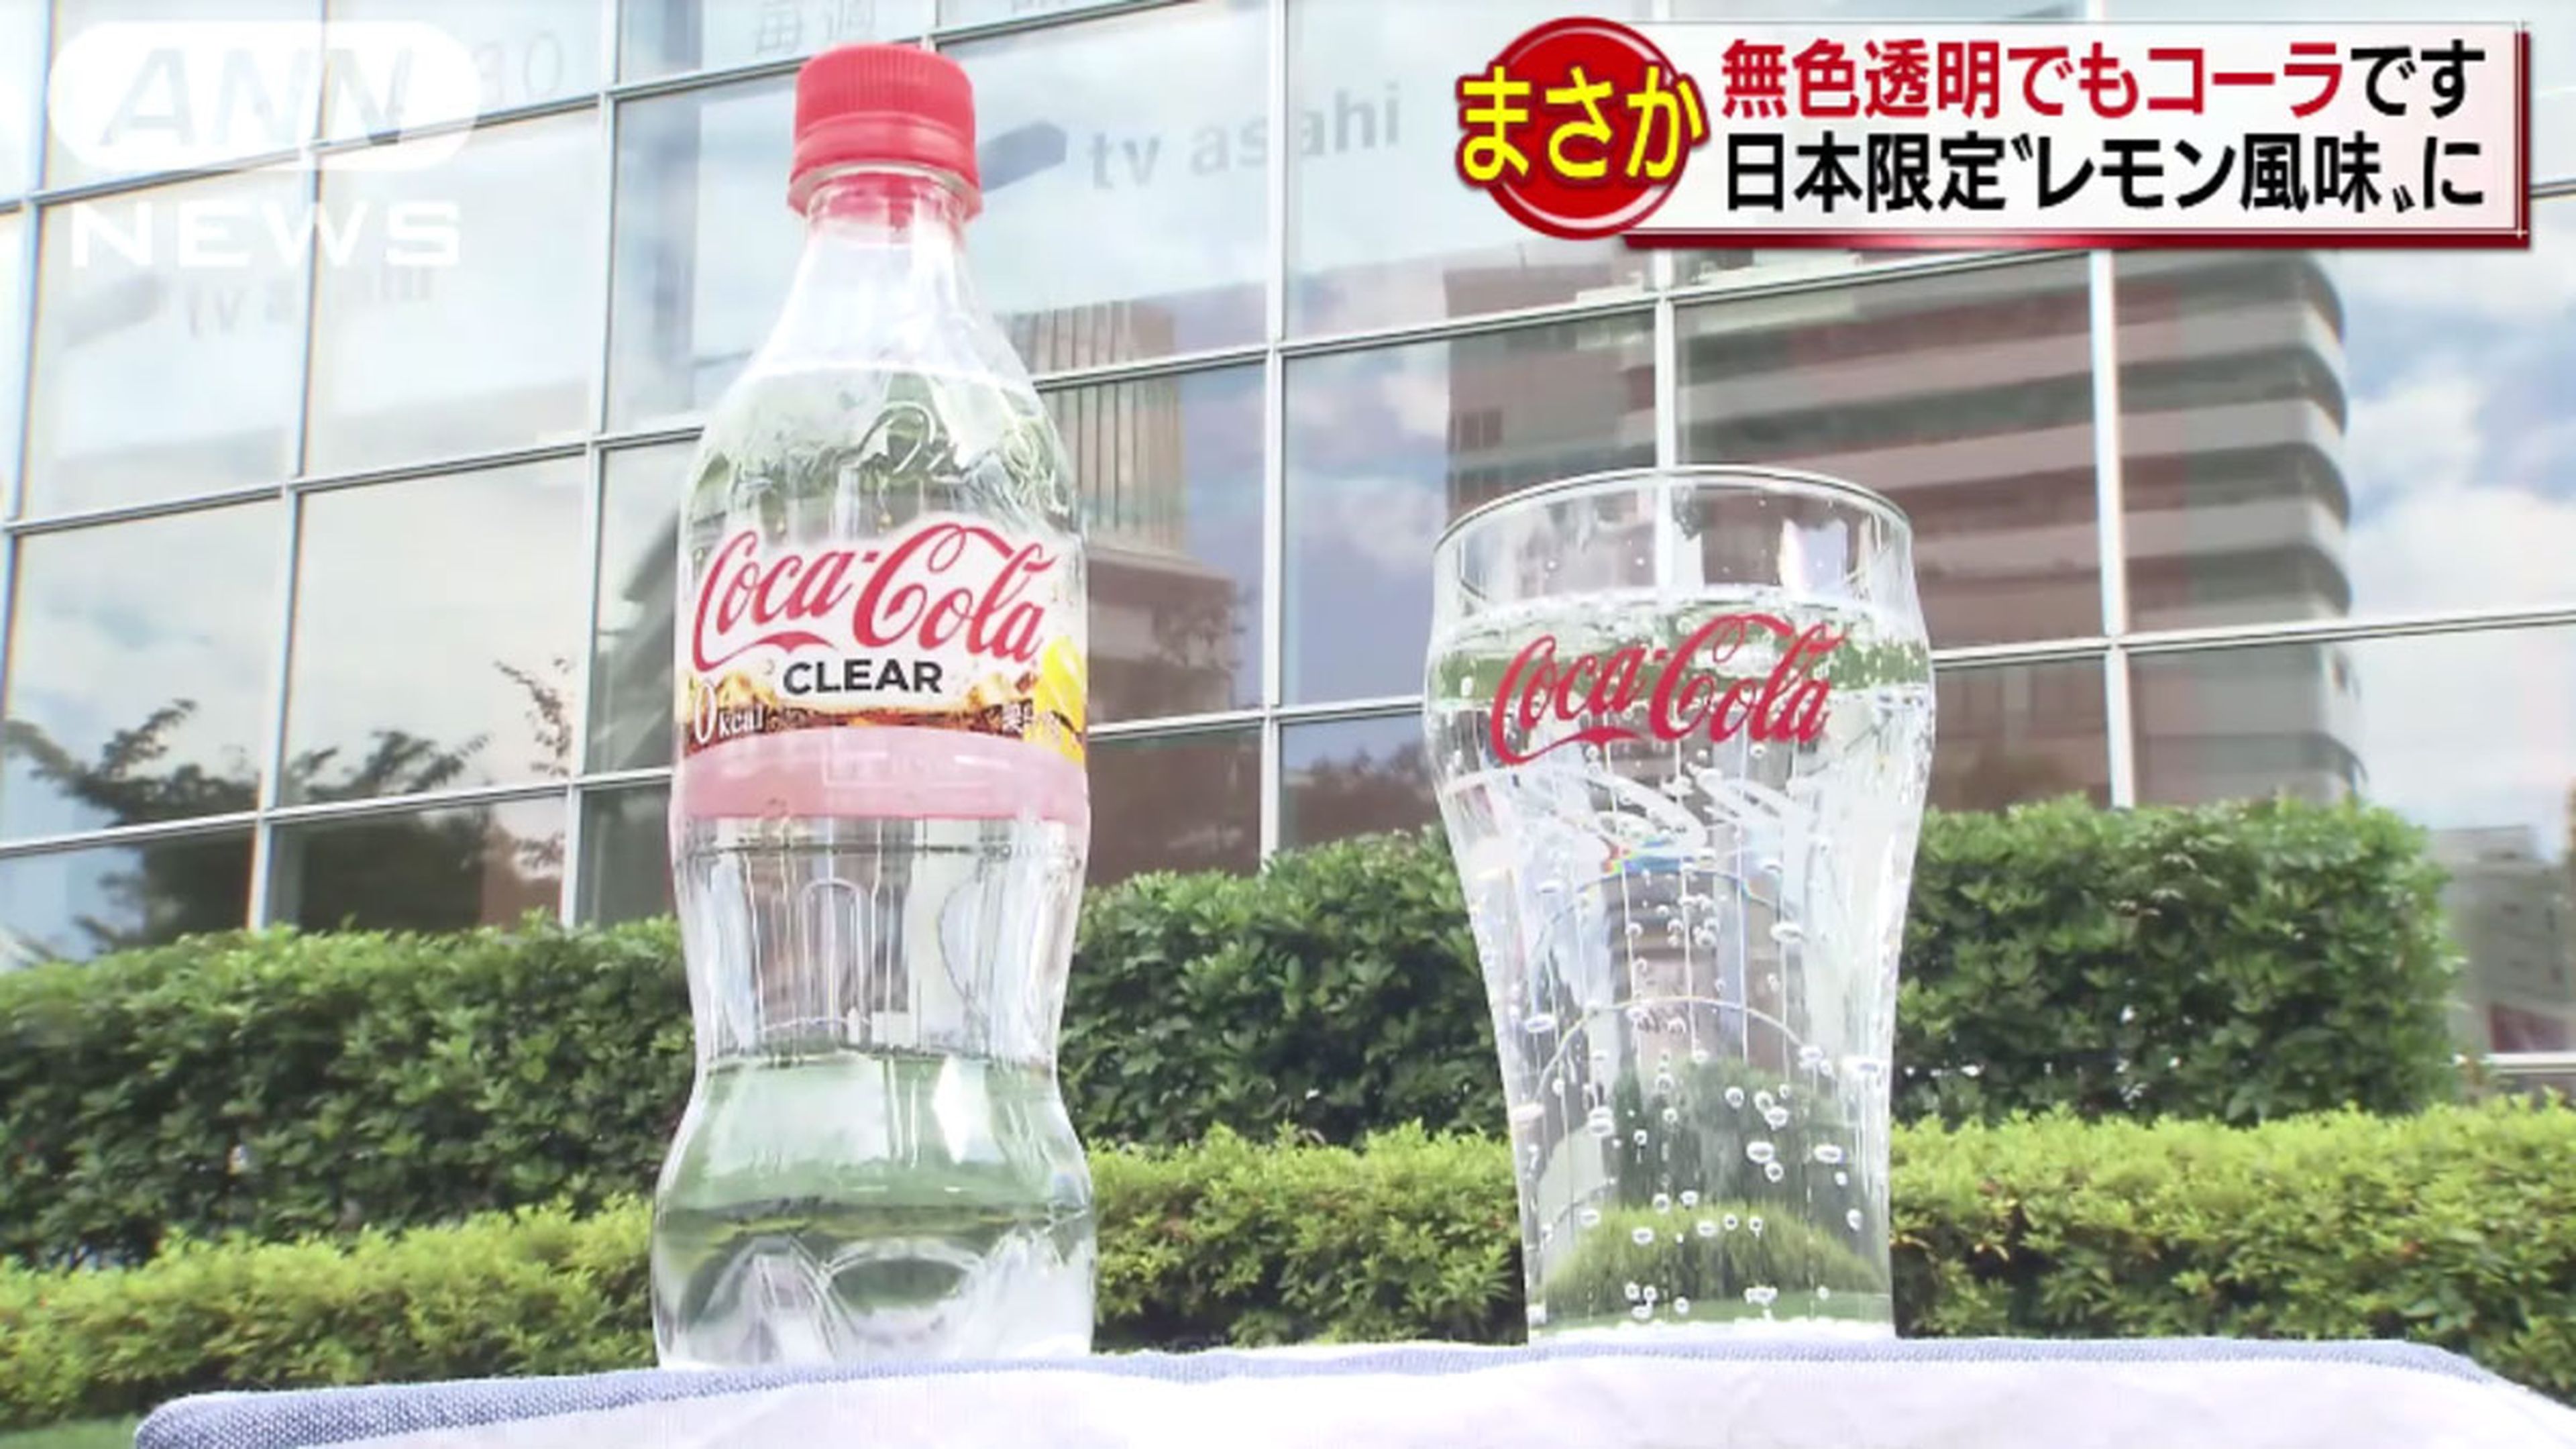 Coca-cola transparente